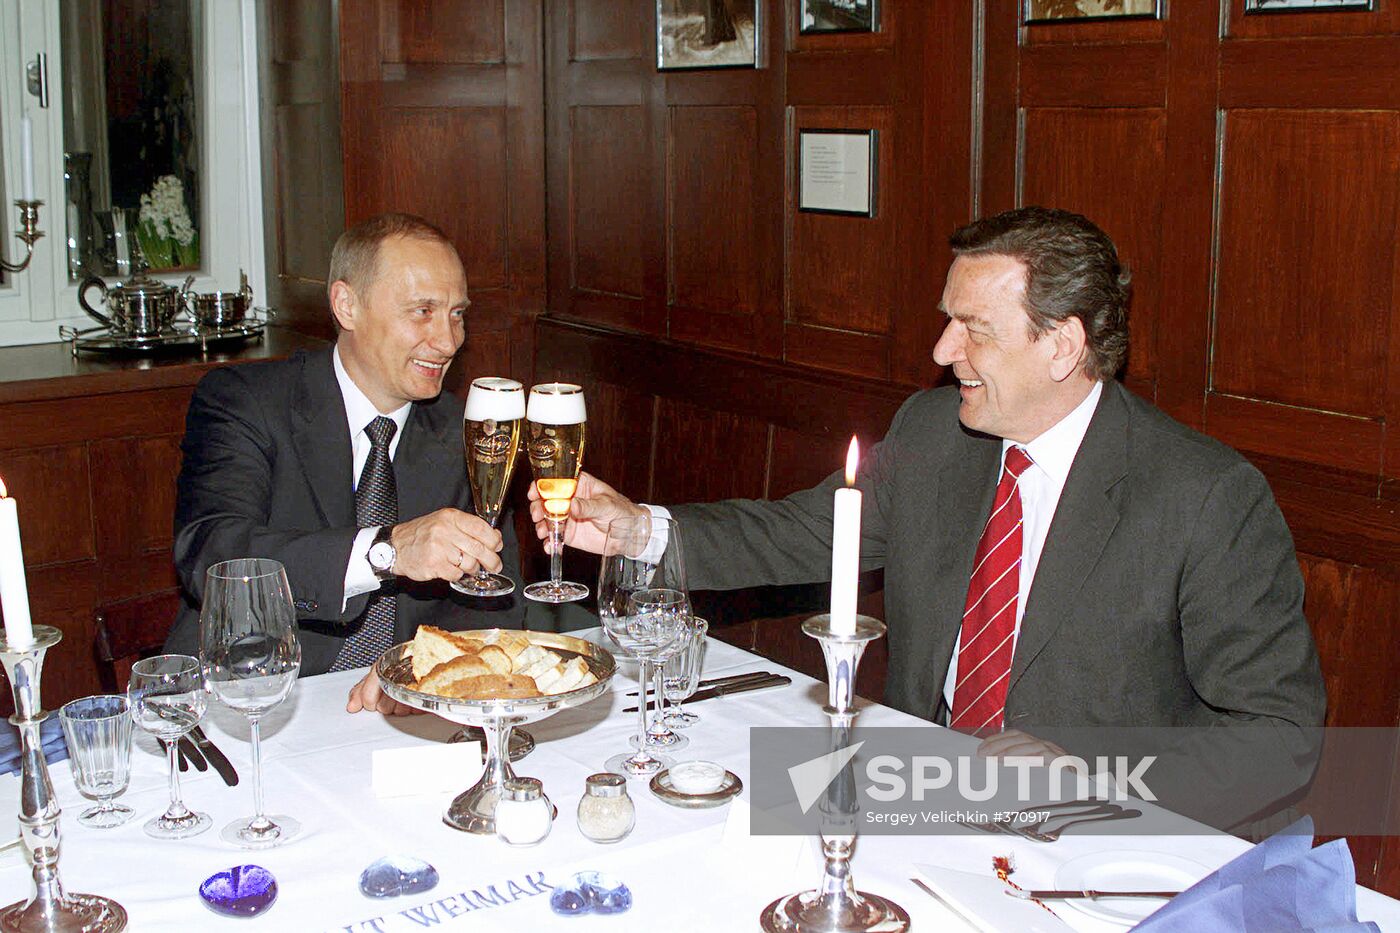 Vladimir Putin and Gerhard Schroeder